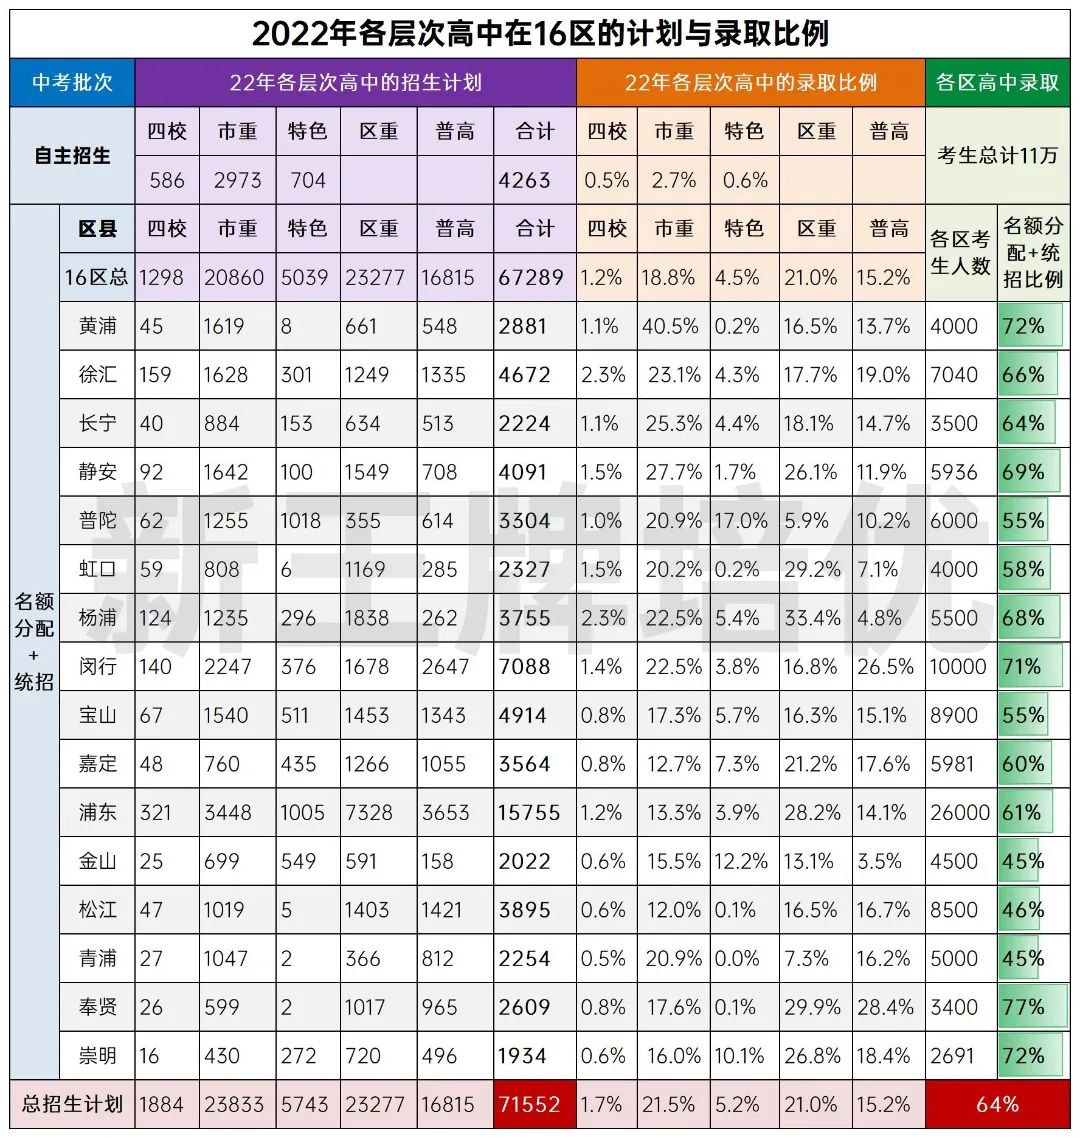 上海各层次高中在16区的计划与录取比例情况